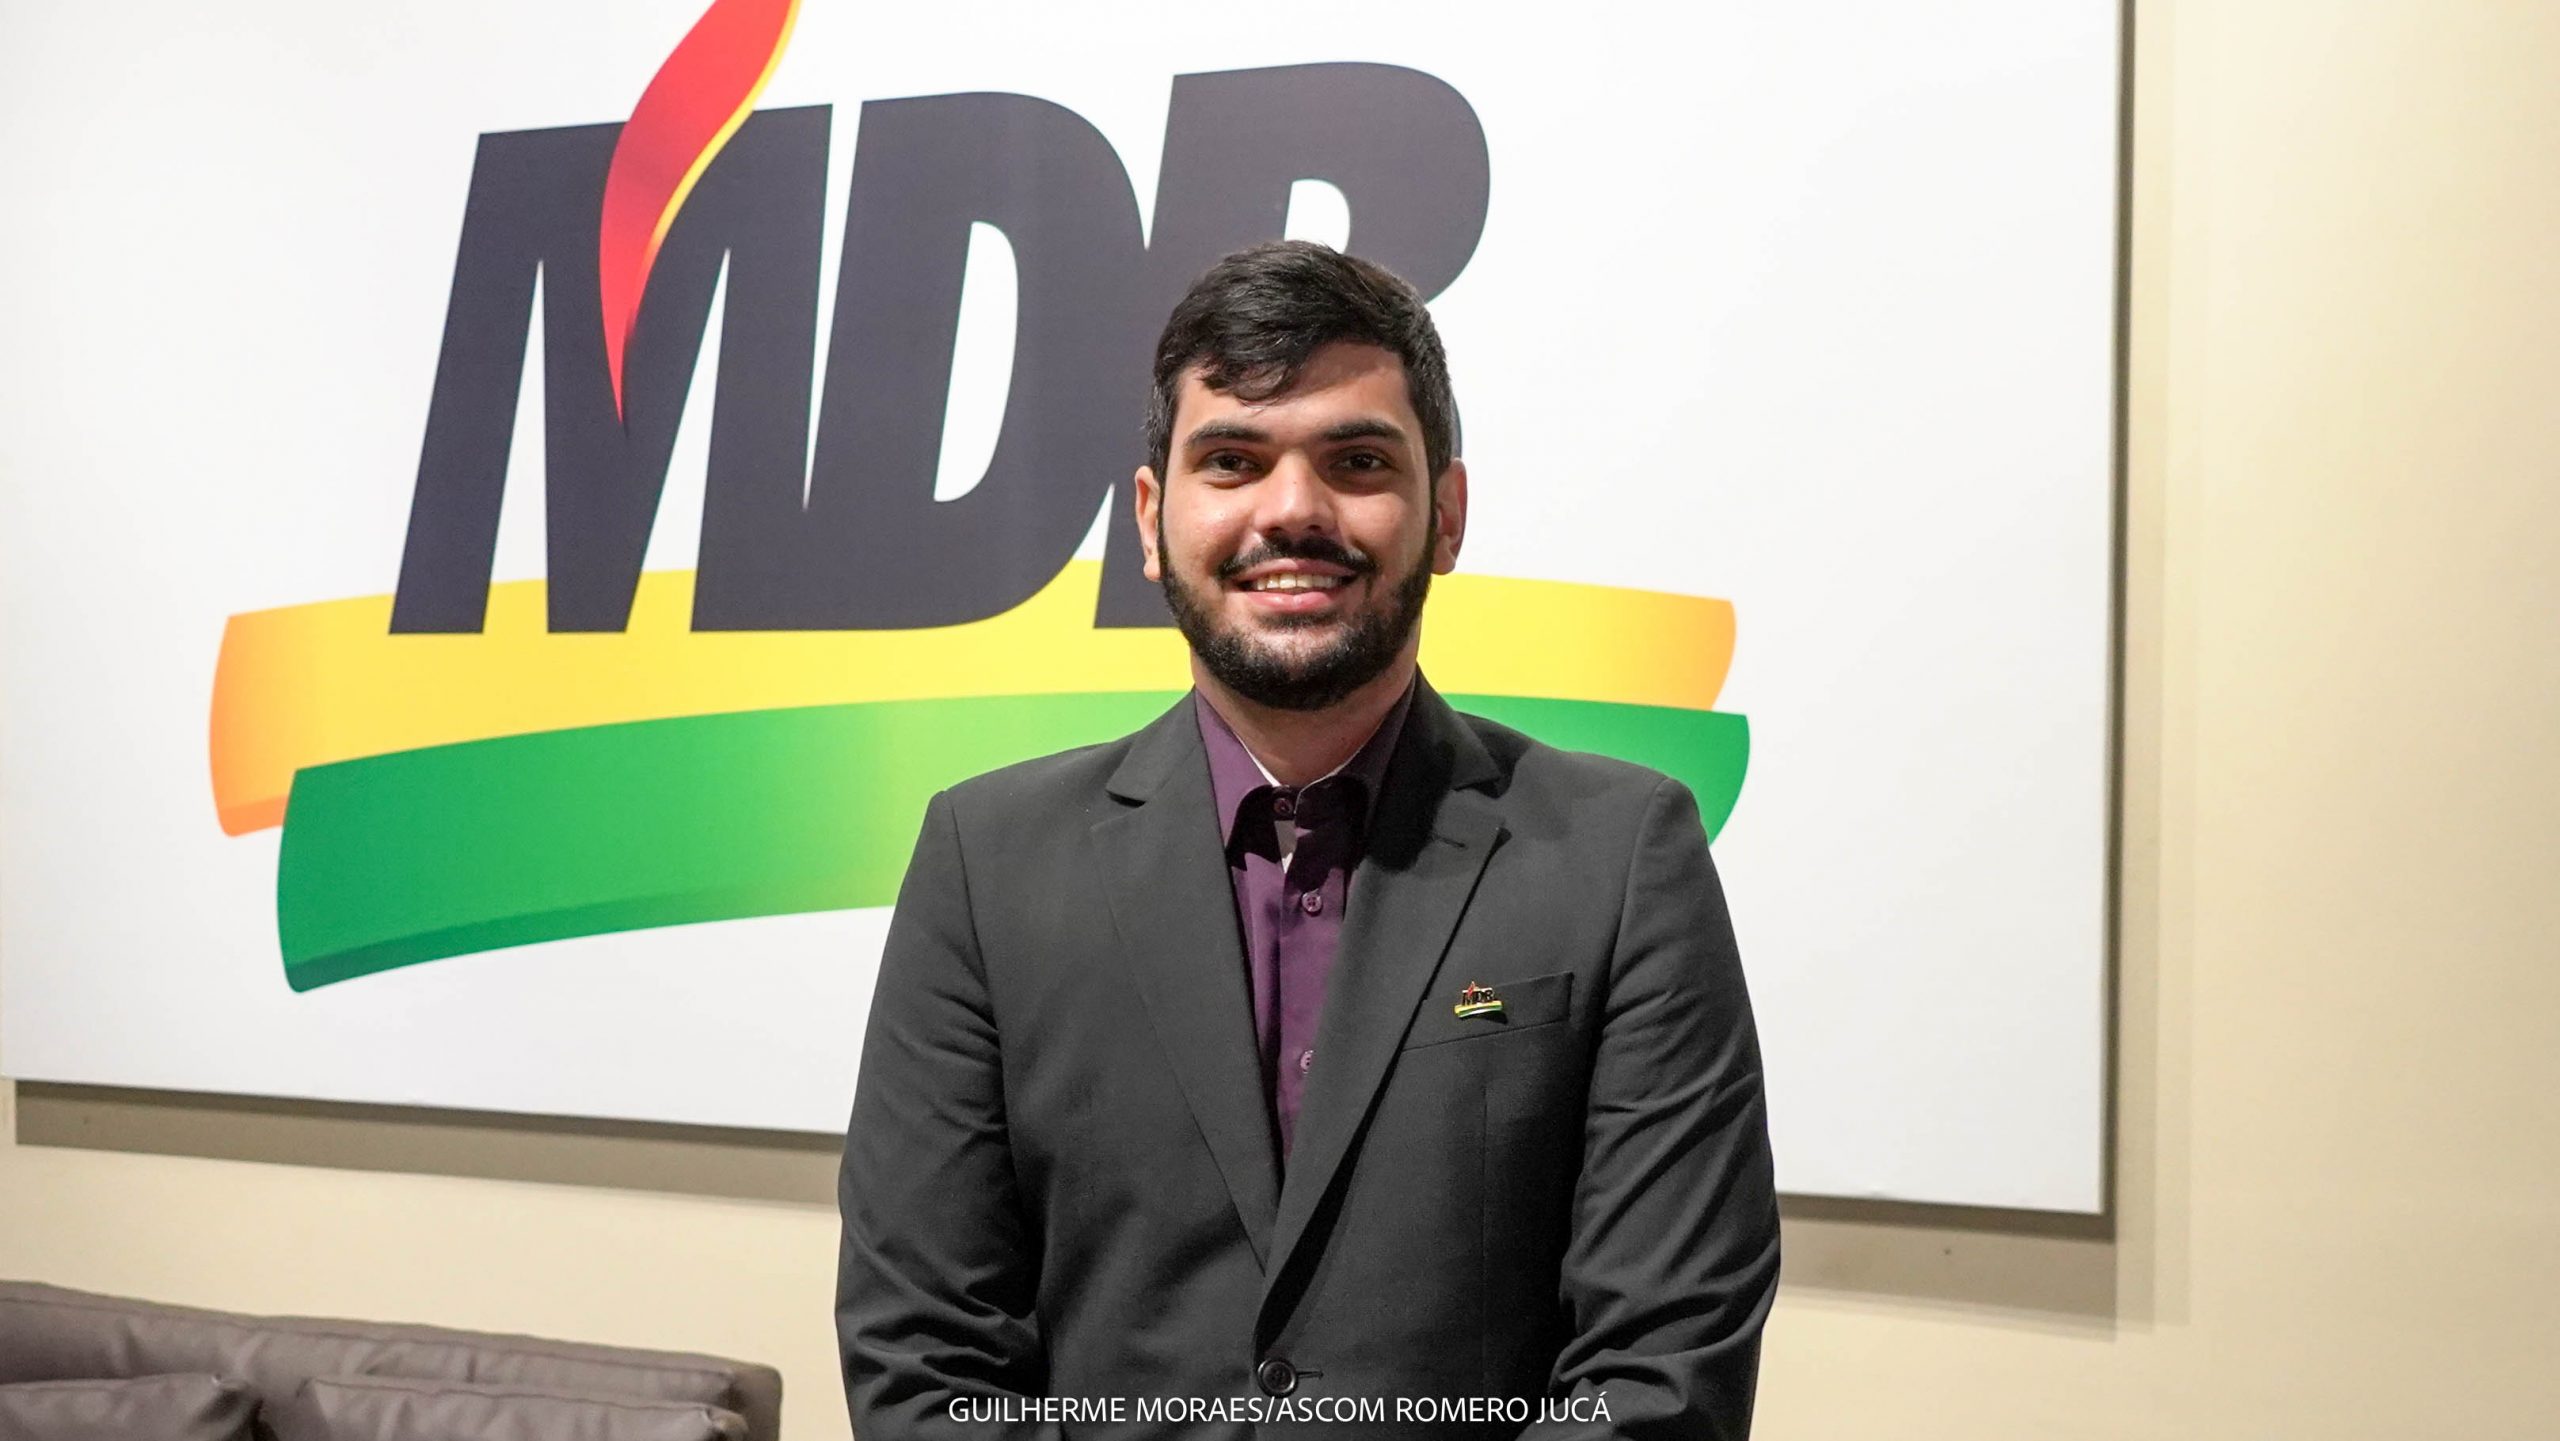 “Política é lugar de jovem” – Bruno Magalhães, presidente da JMDB de Roraima, participa de podcast com Romero Jucá